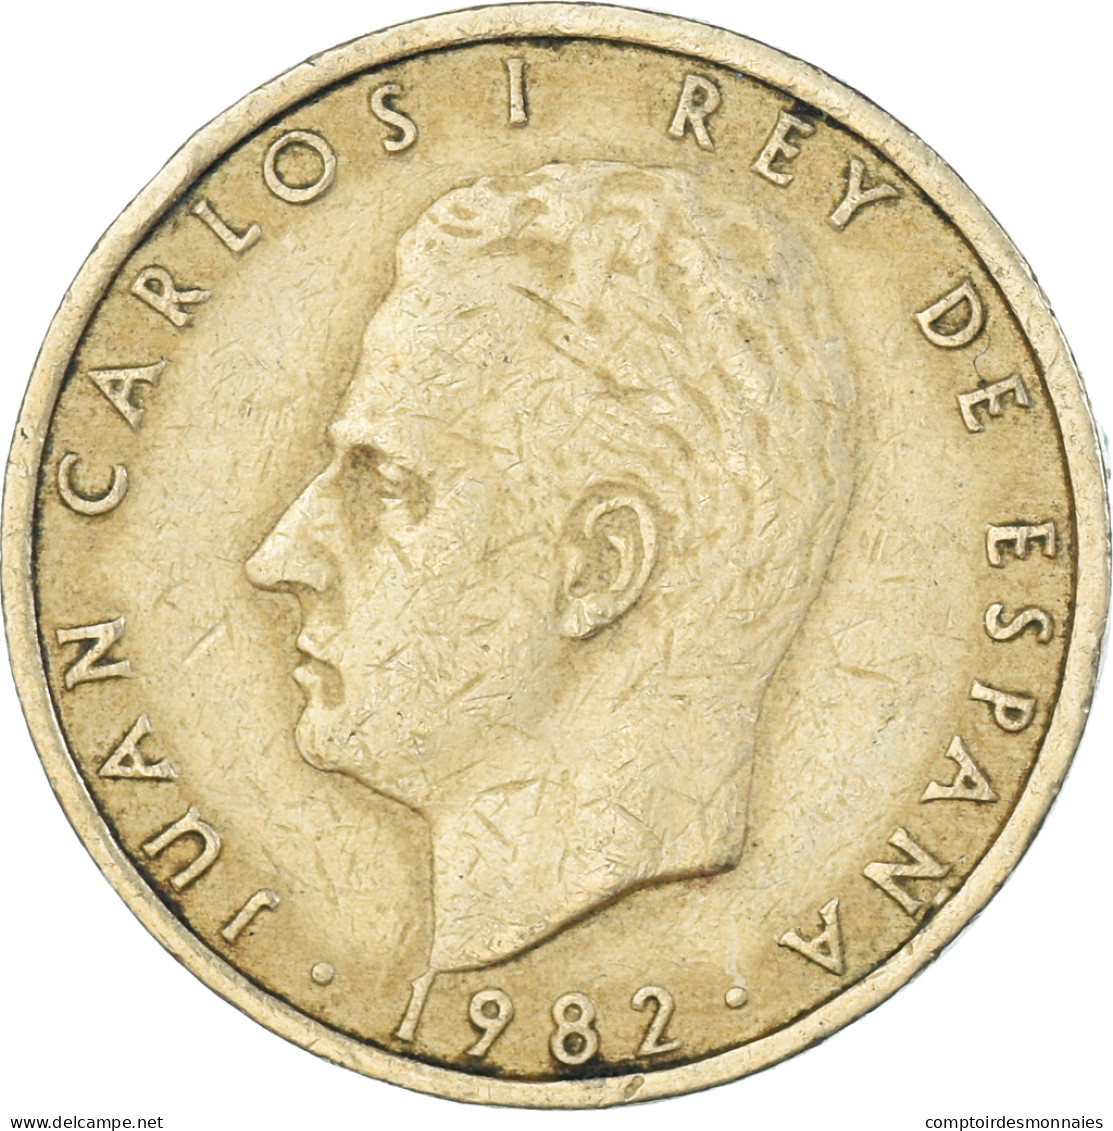 Monnaie, Espagne, 100 Pesetas, 1982 - 100 Peseta